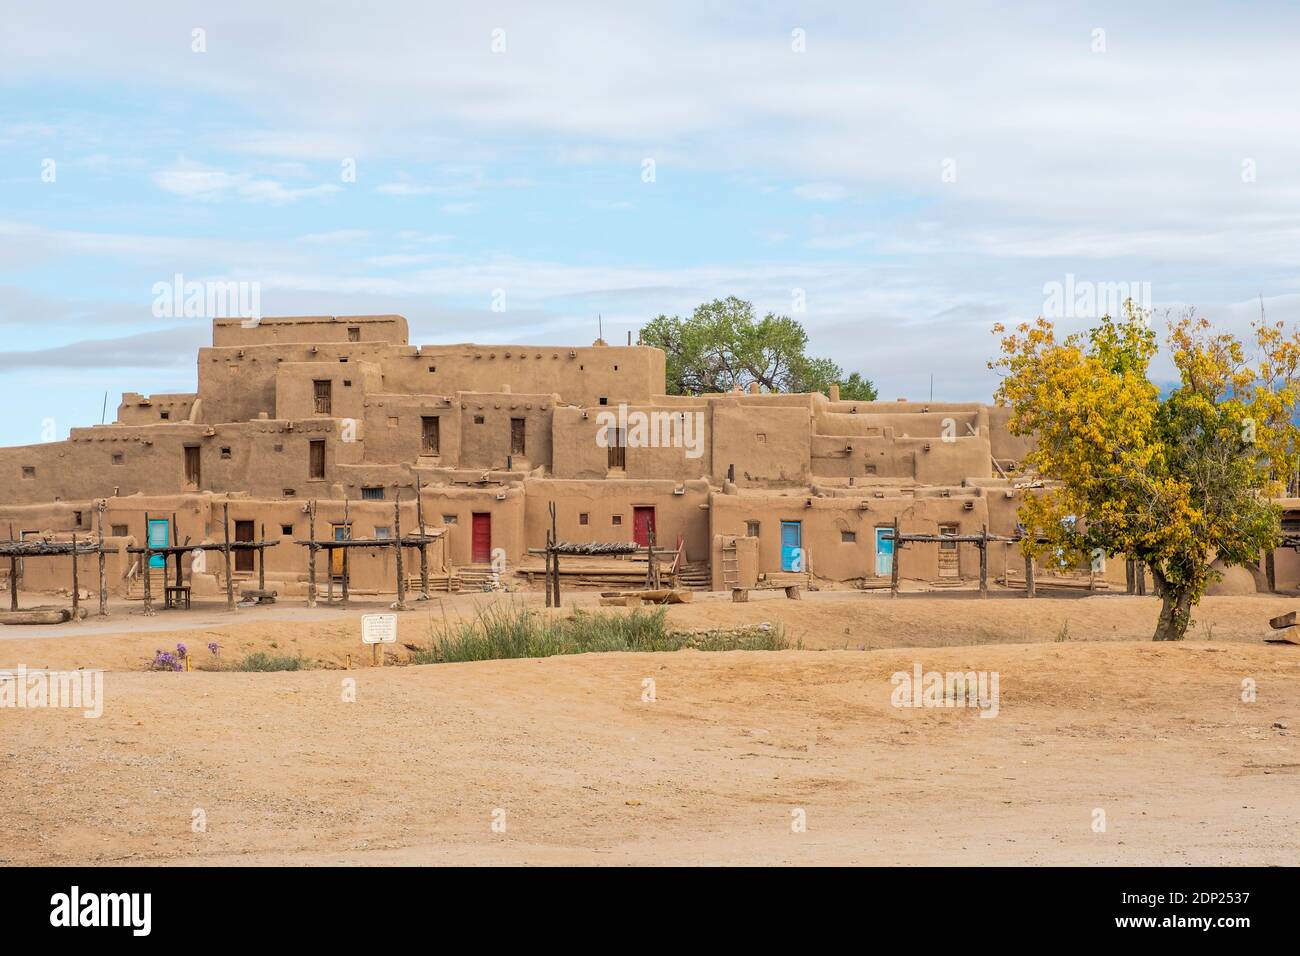 Lehmziegelhäuser im historischen indianischen Dorf Taos Pueblo, New Mexico, USA. Ein UNESCO-Weltkulturerbe. Stockfoto